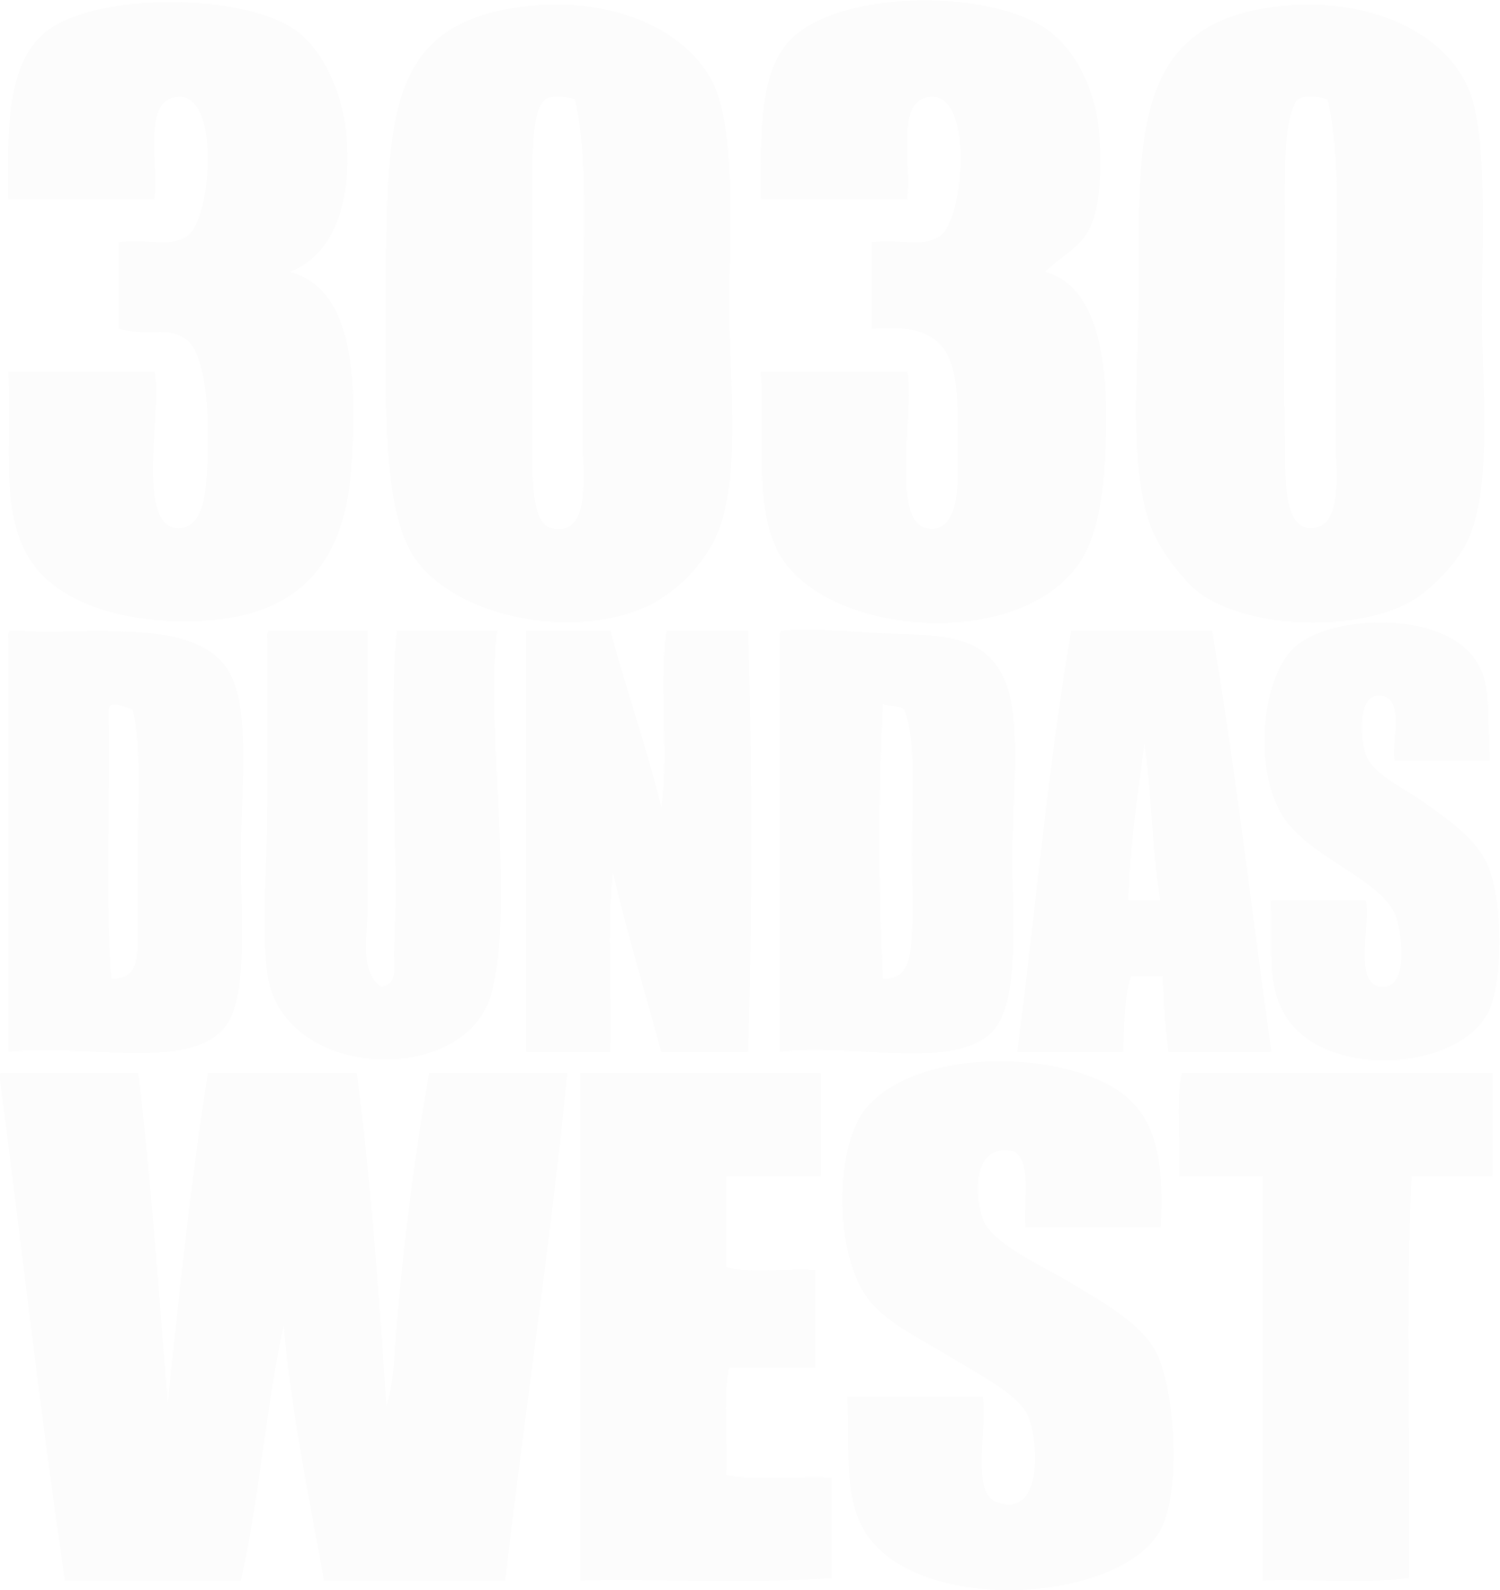 3030 DUNDAS WEST